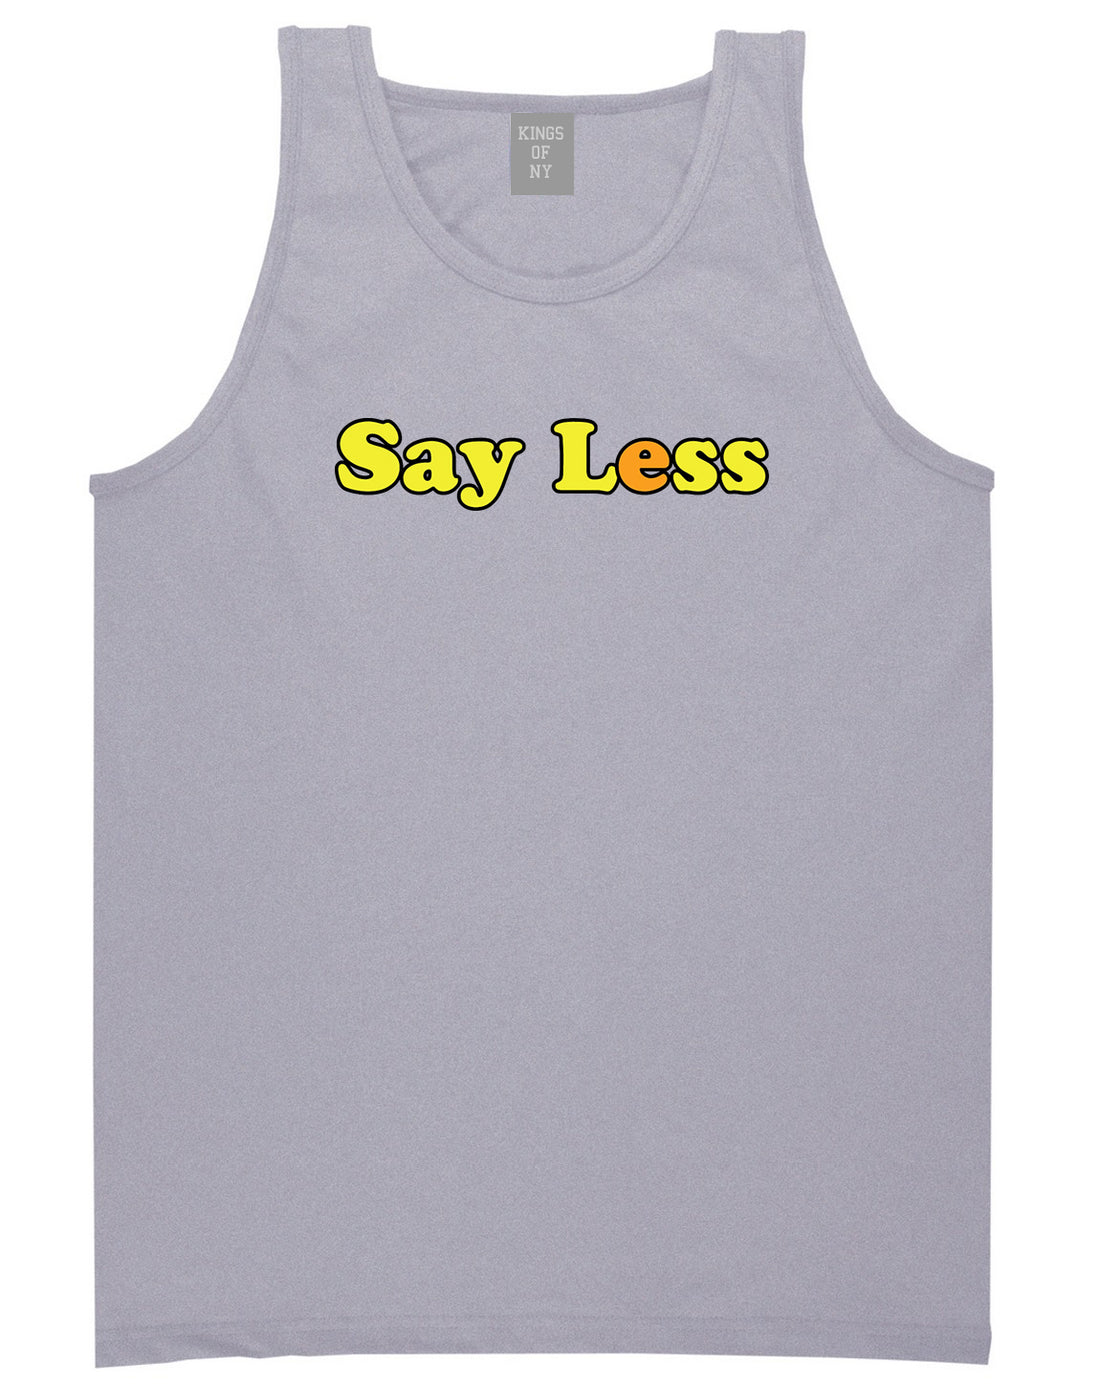 Say Less Mens Tank Top Shirt Grey